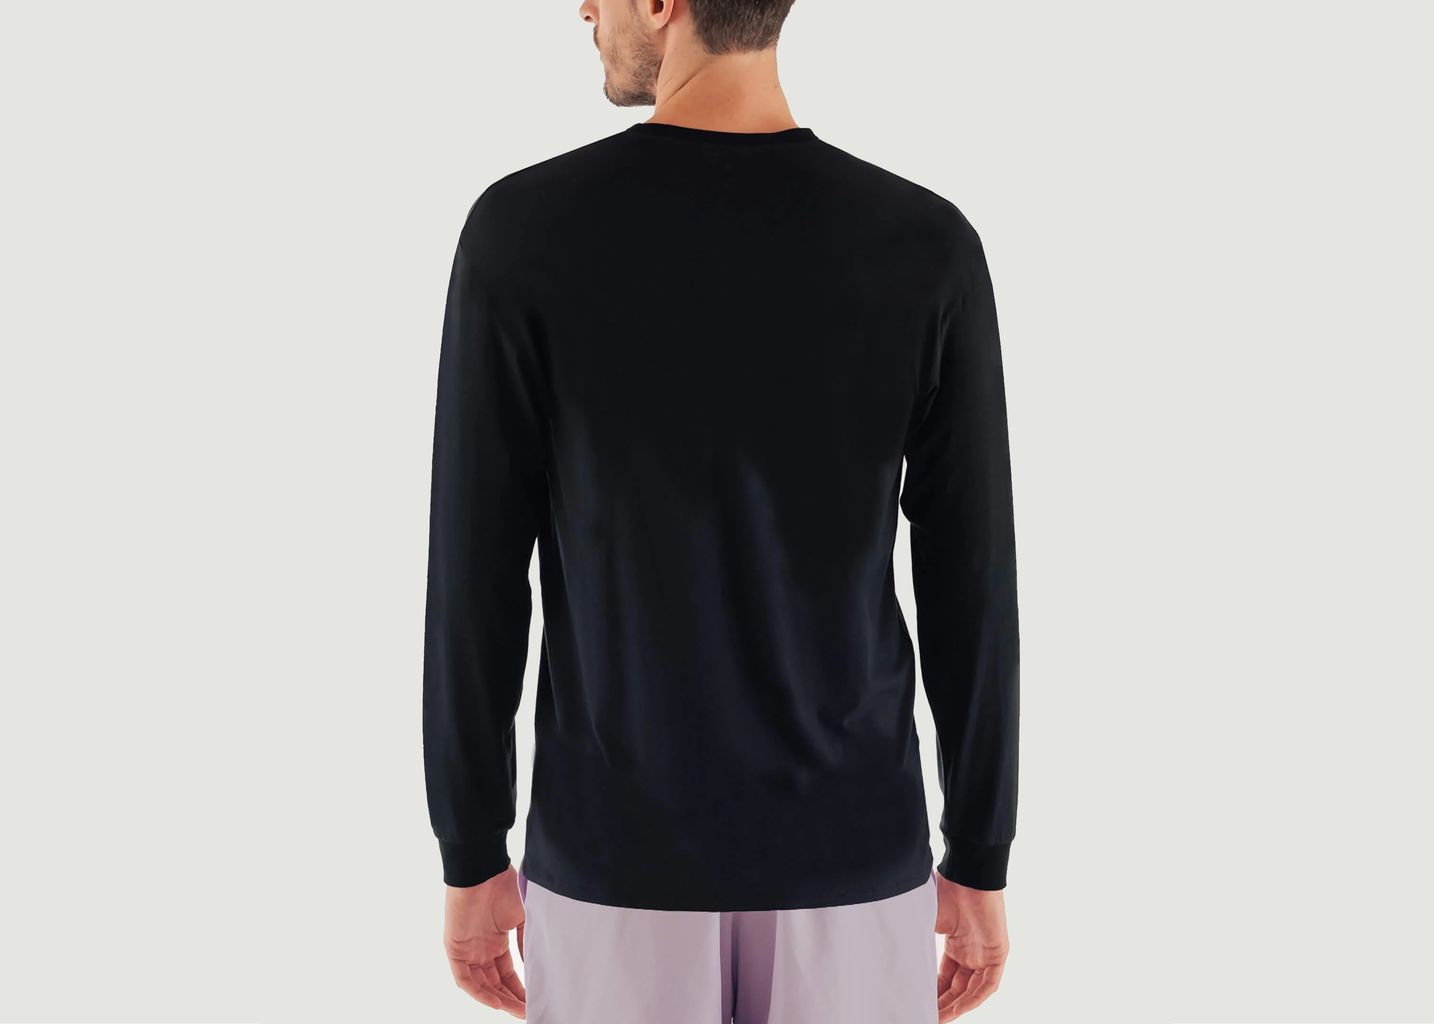 Long sleeve teeshirt feel good - Circle Sportswear